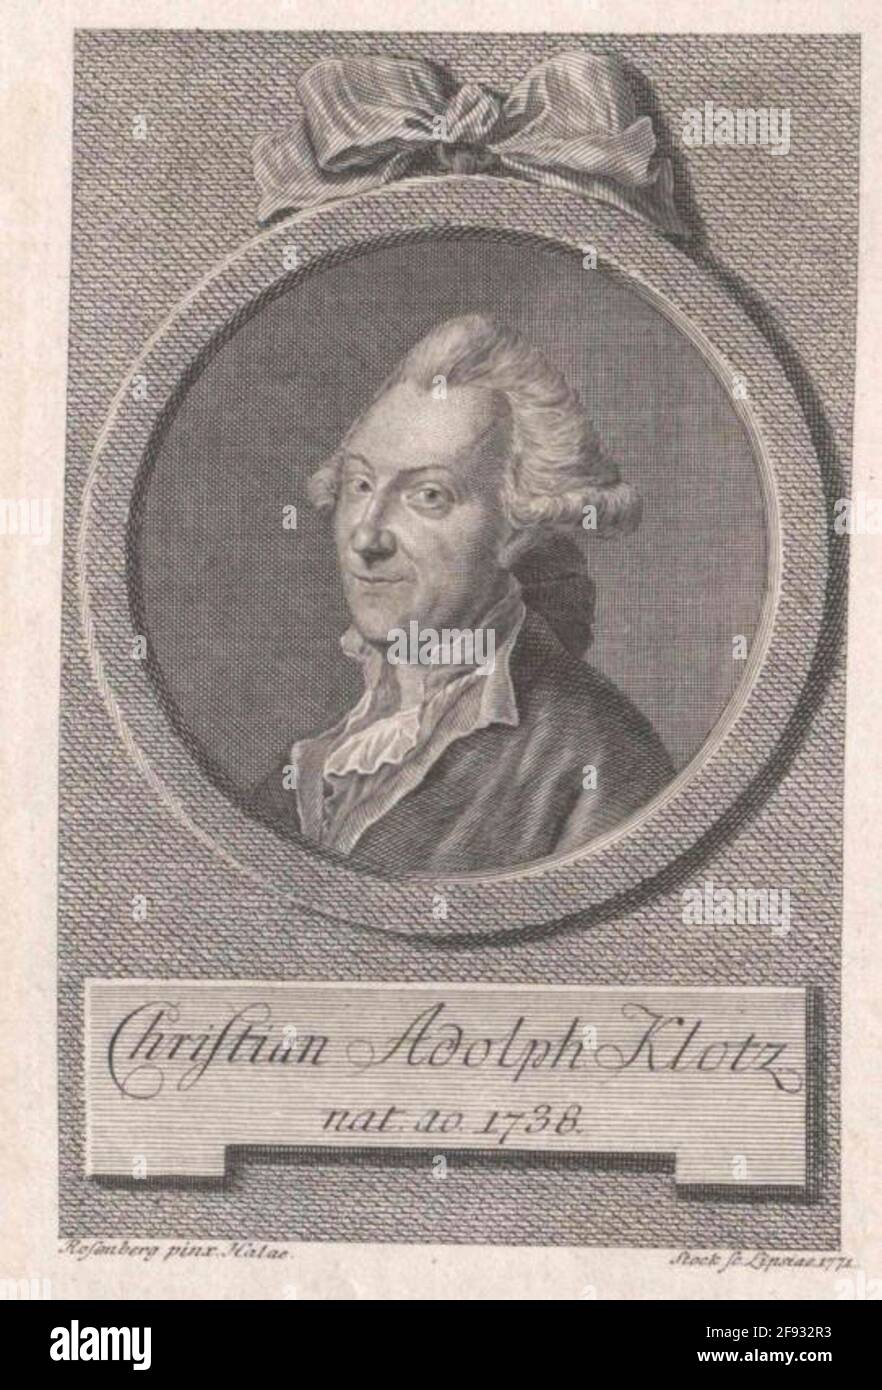 Klotz, Christian Adolf. Stockfoto